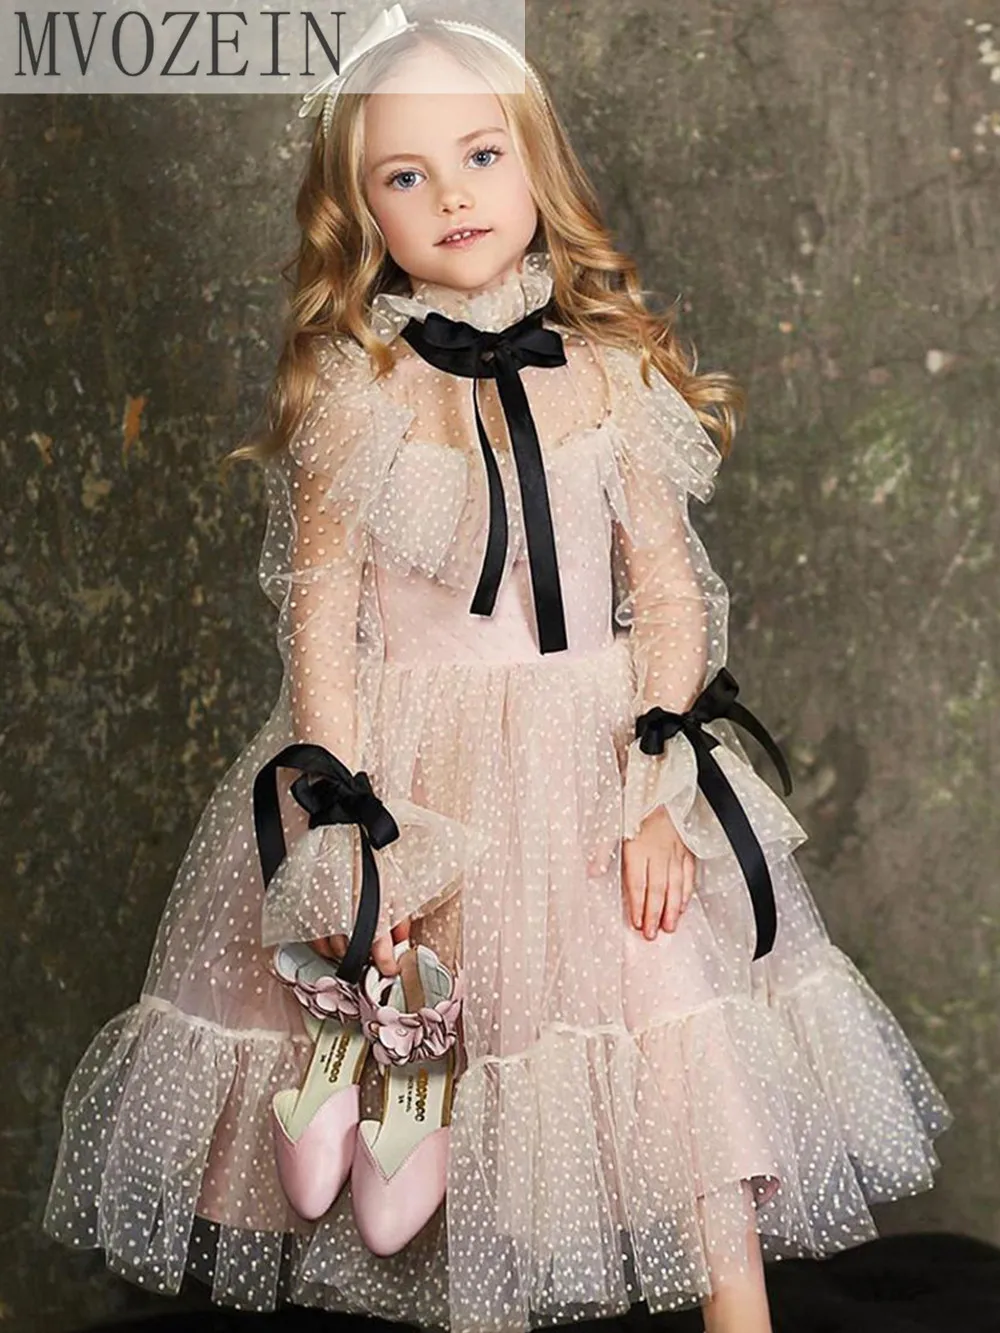 Mvozein Pundunud lilleneiu Kleit Polka-dot Tülli Sünnipäev Tüdruk Kleit Pikkade Varrukatega Tüdruk Pulmapidu Kleit Laste Kleit - 0